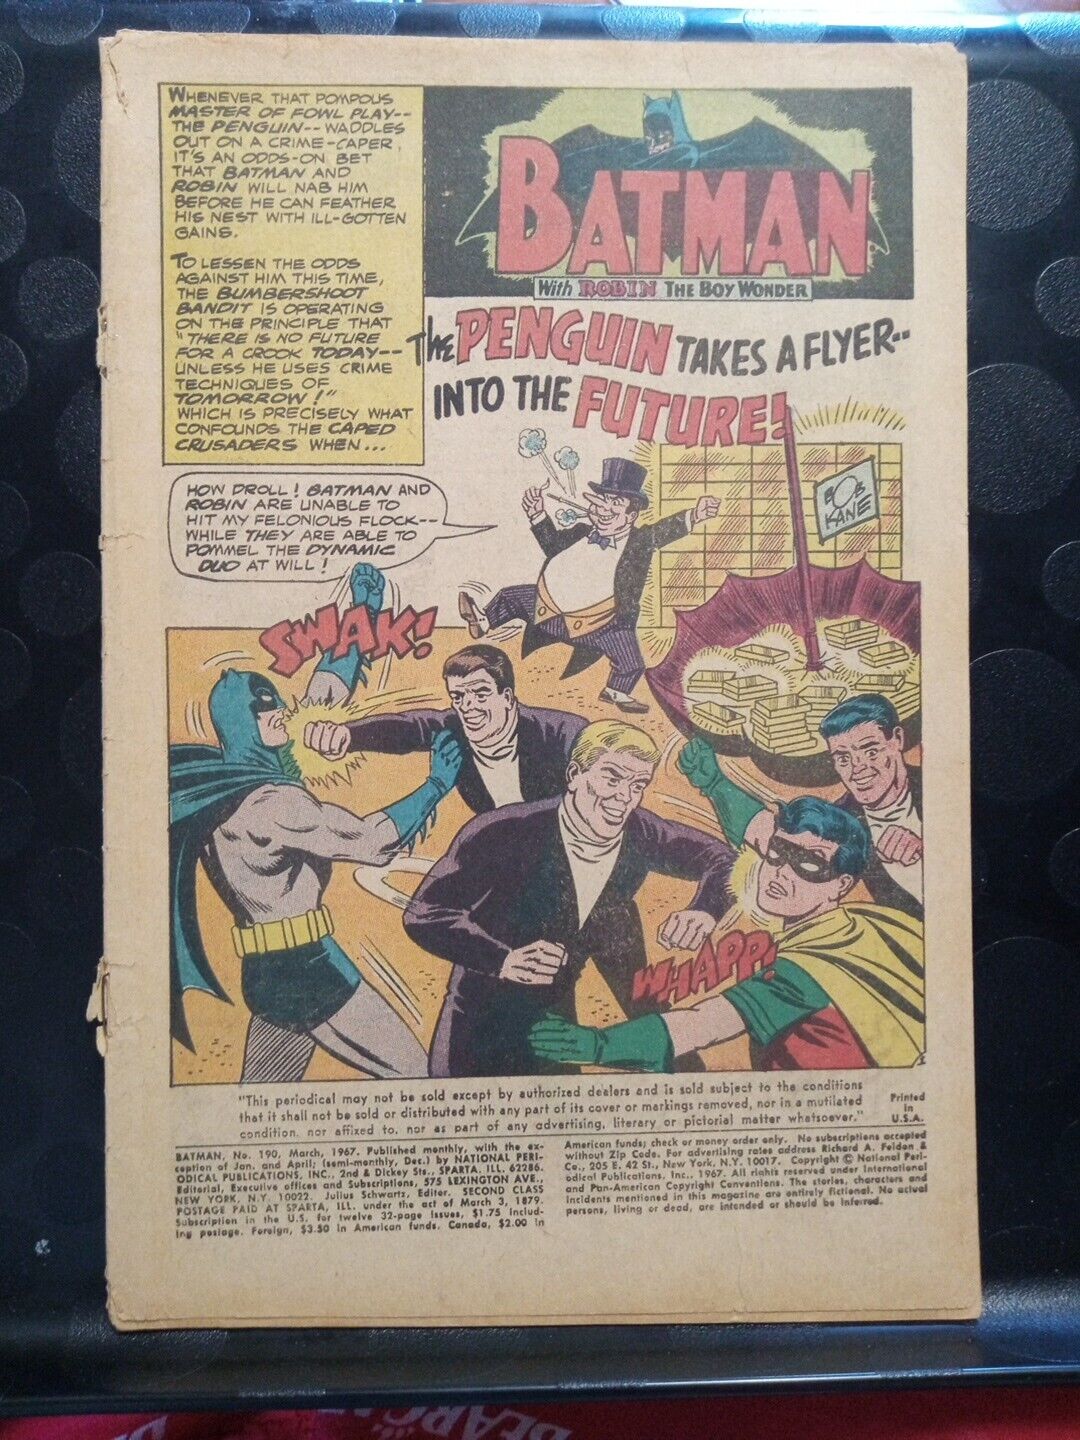 Batman #190 ORIGINAL Vintage 1967 DC Comics Penguin No Cover